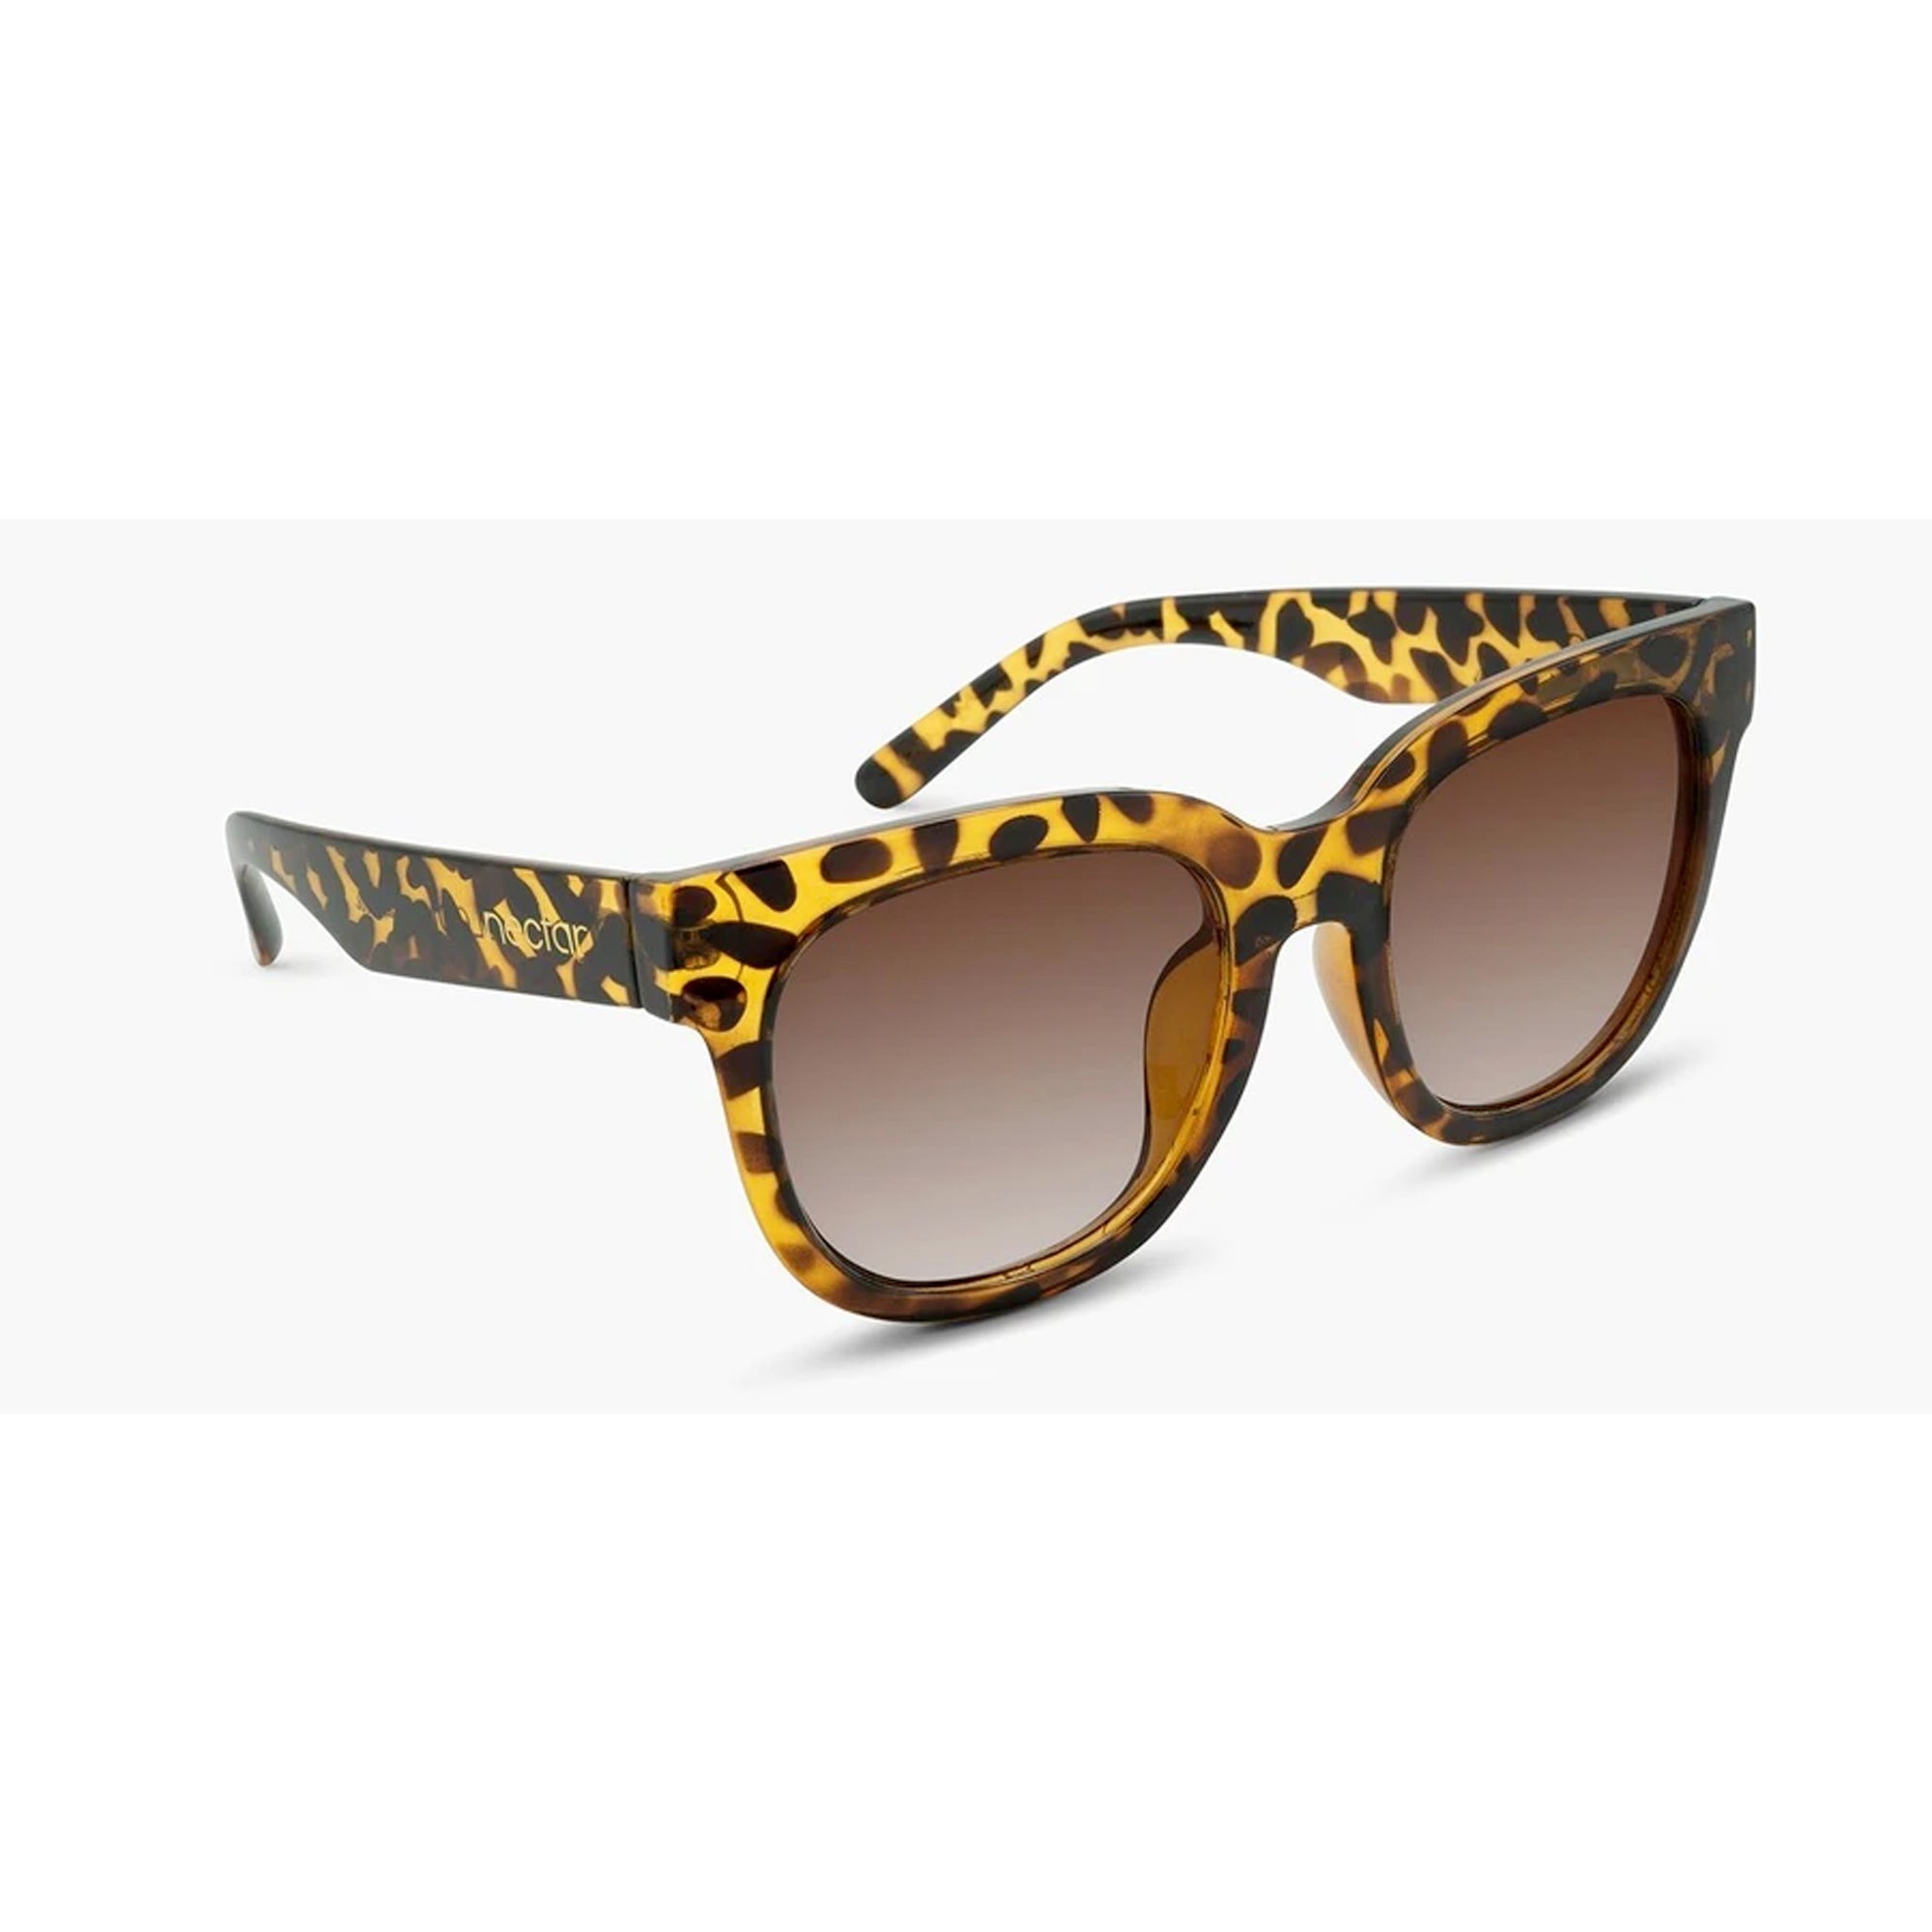 Nectar Chatham Women's Polarized Sunglasses